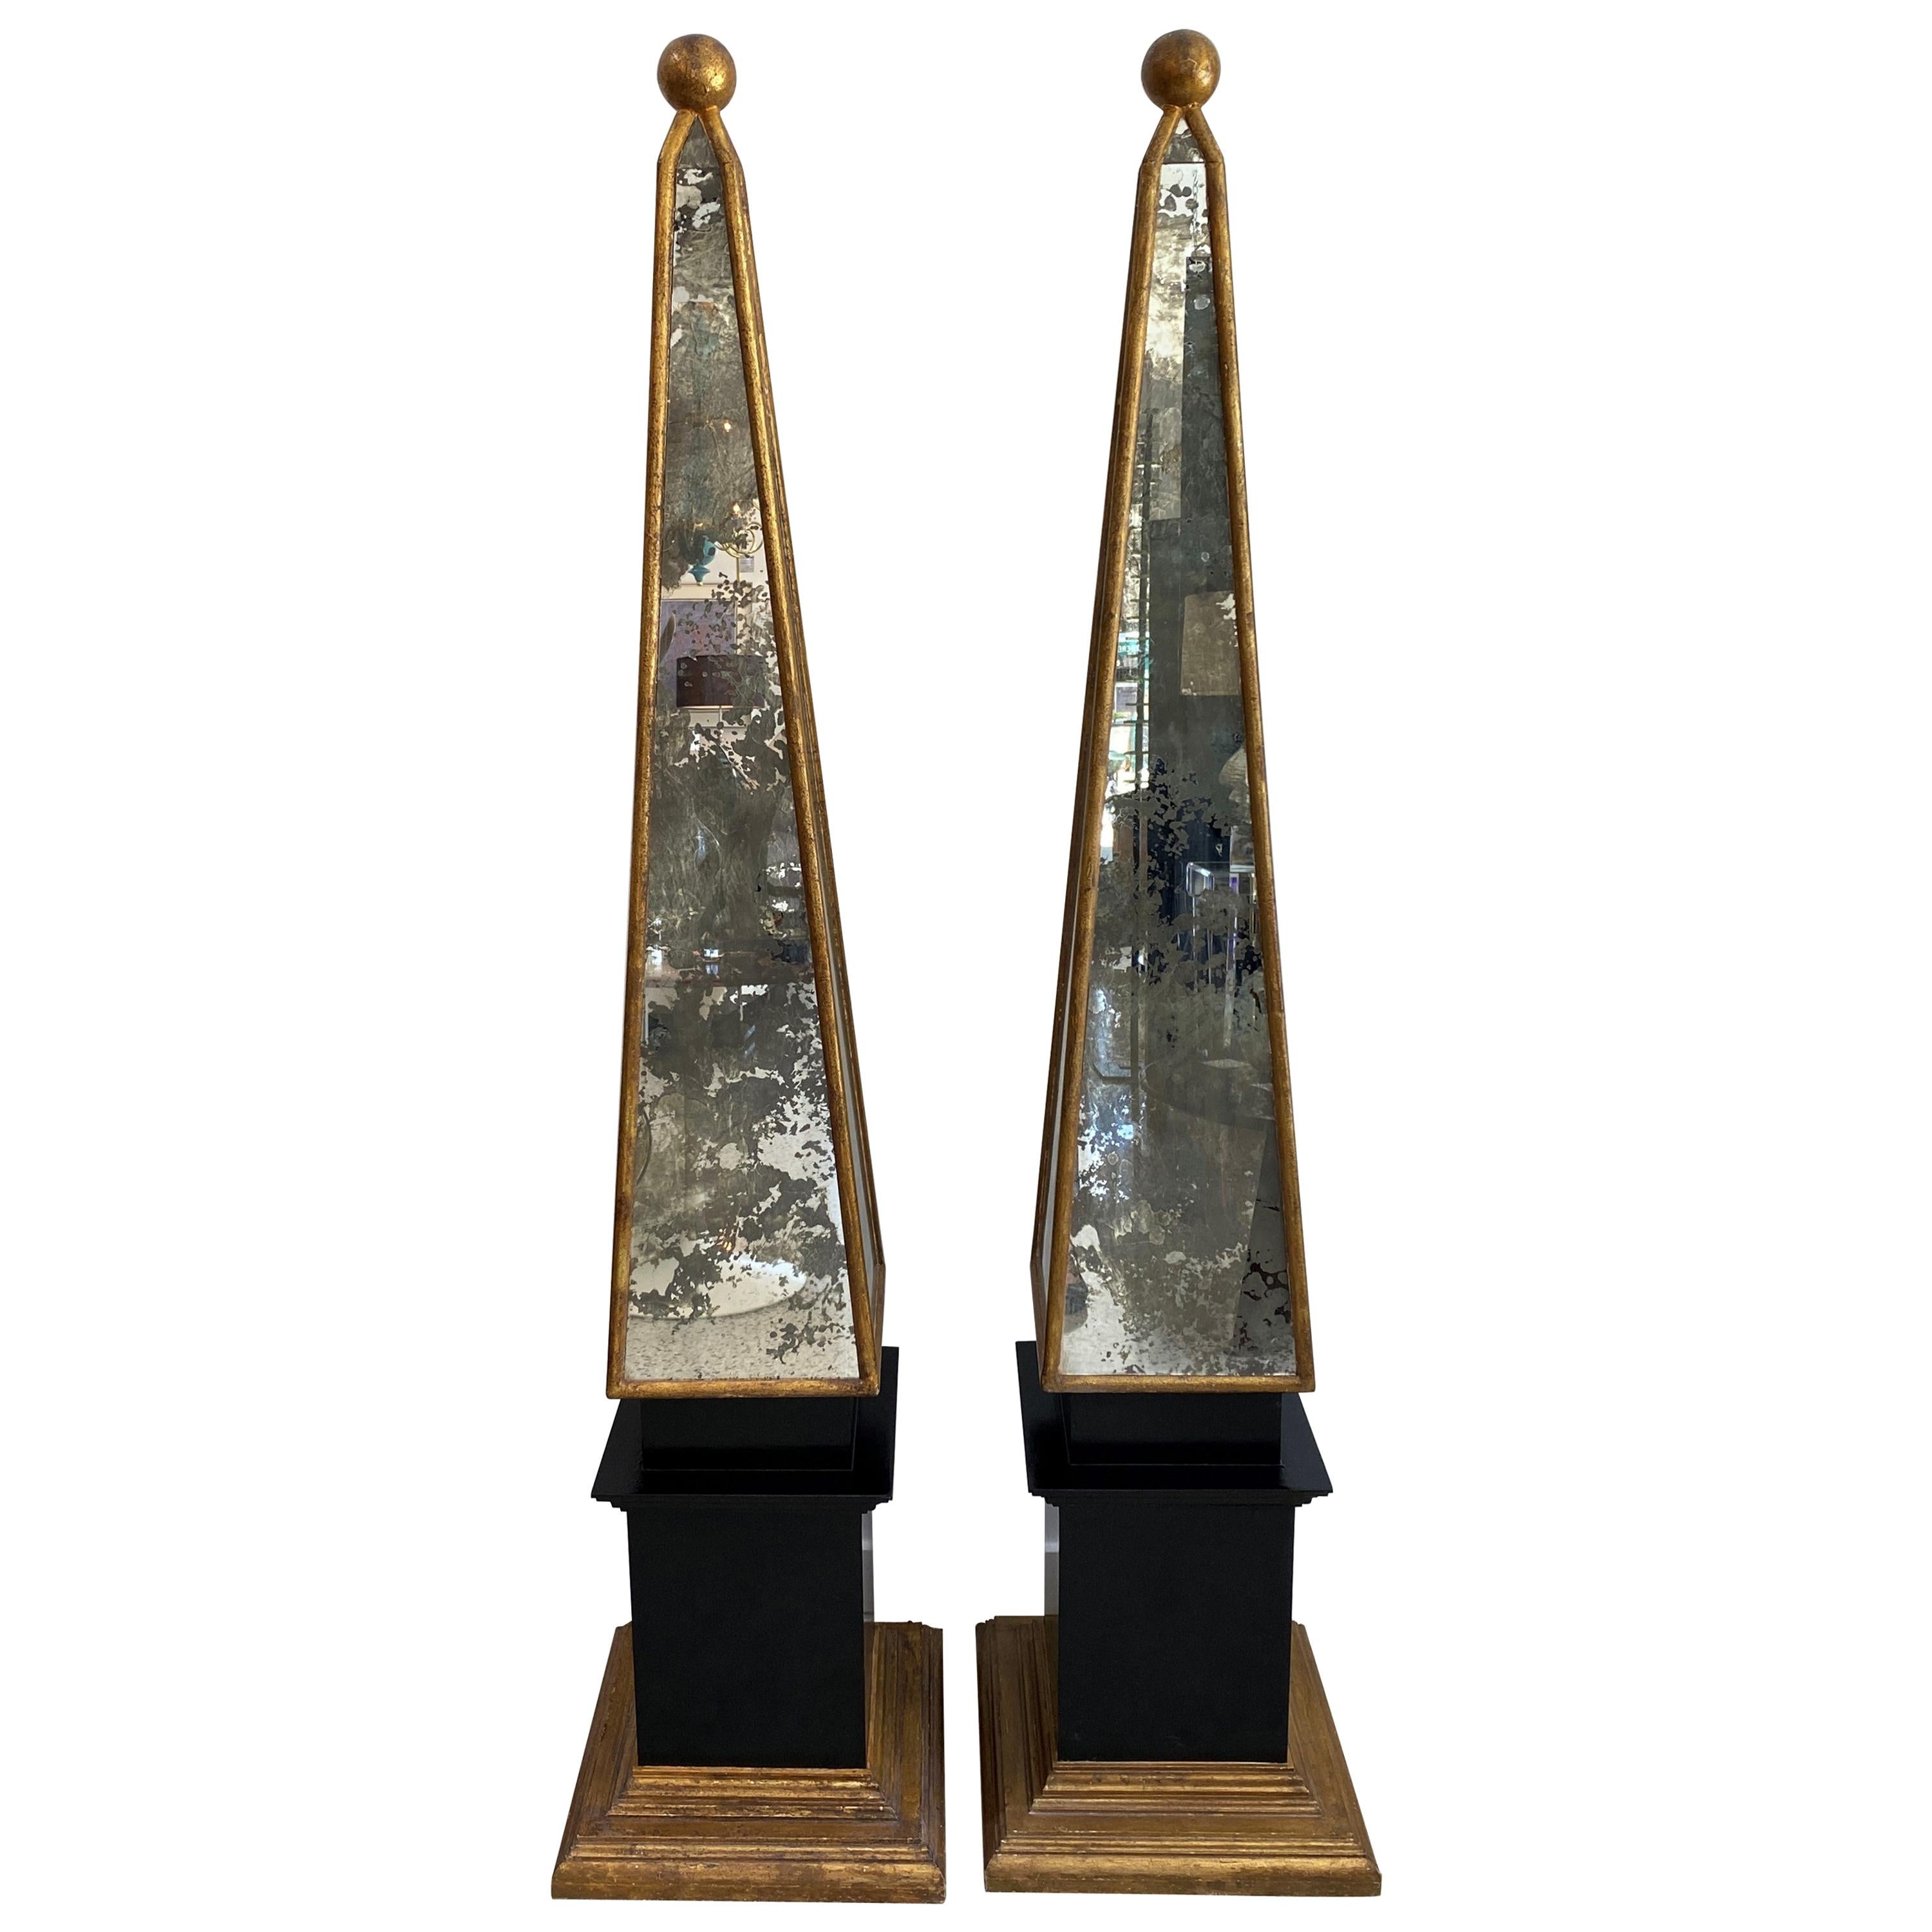 Pair of Mirrored Obelisk